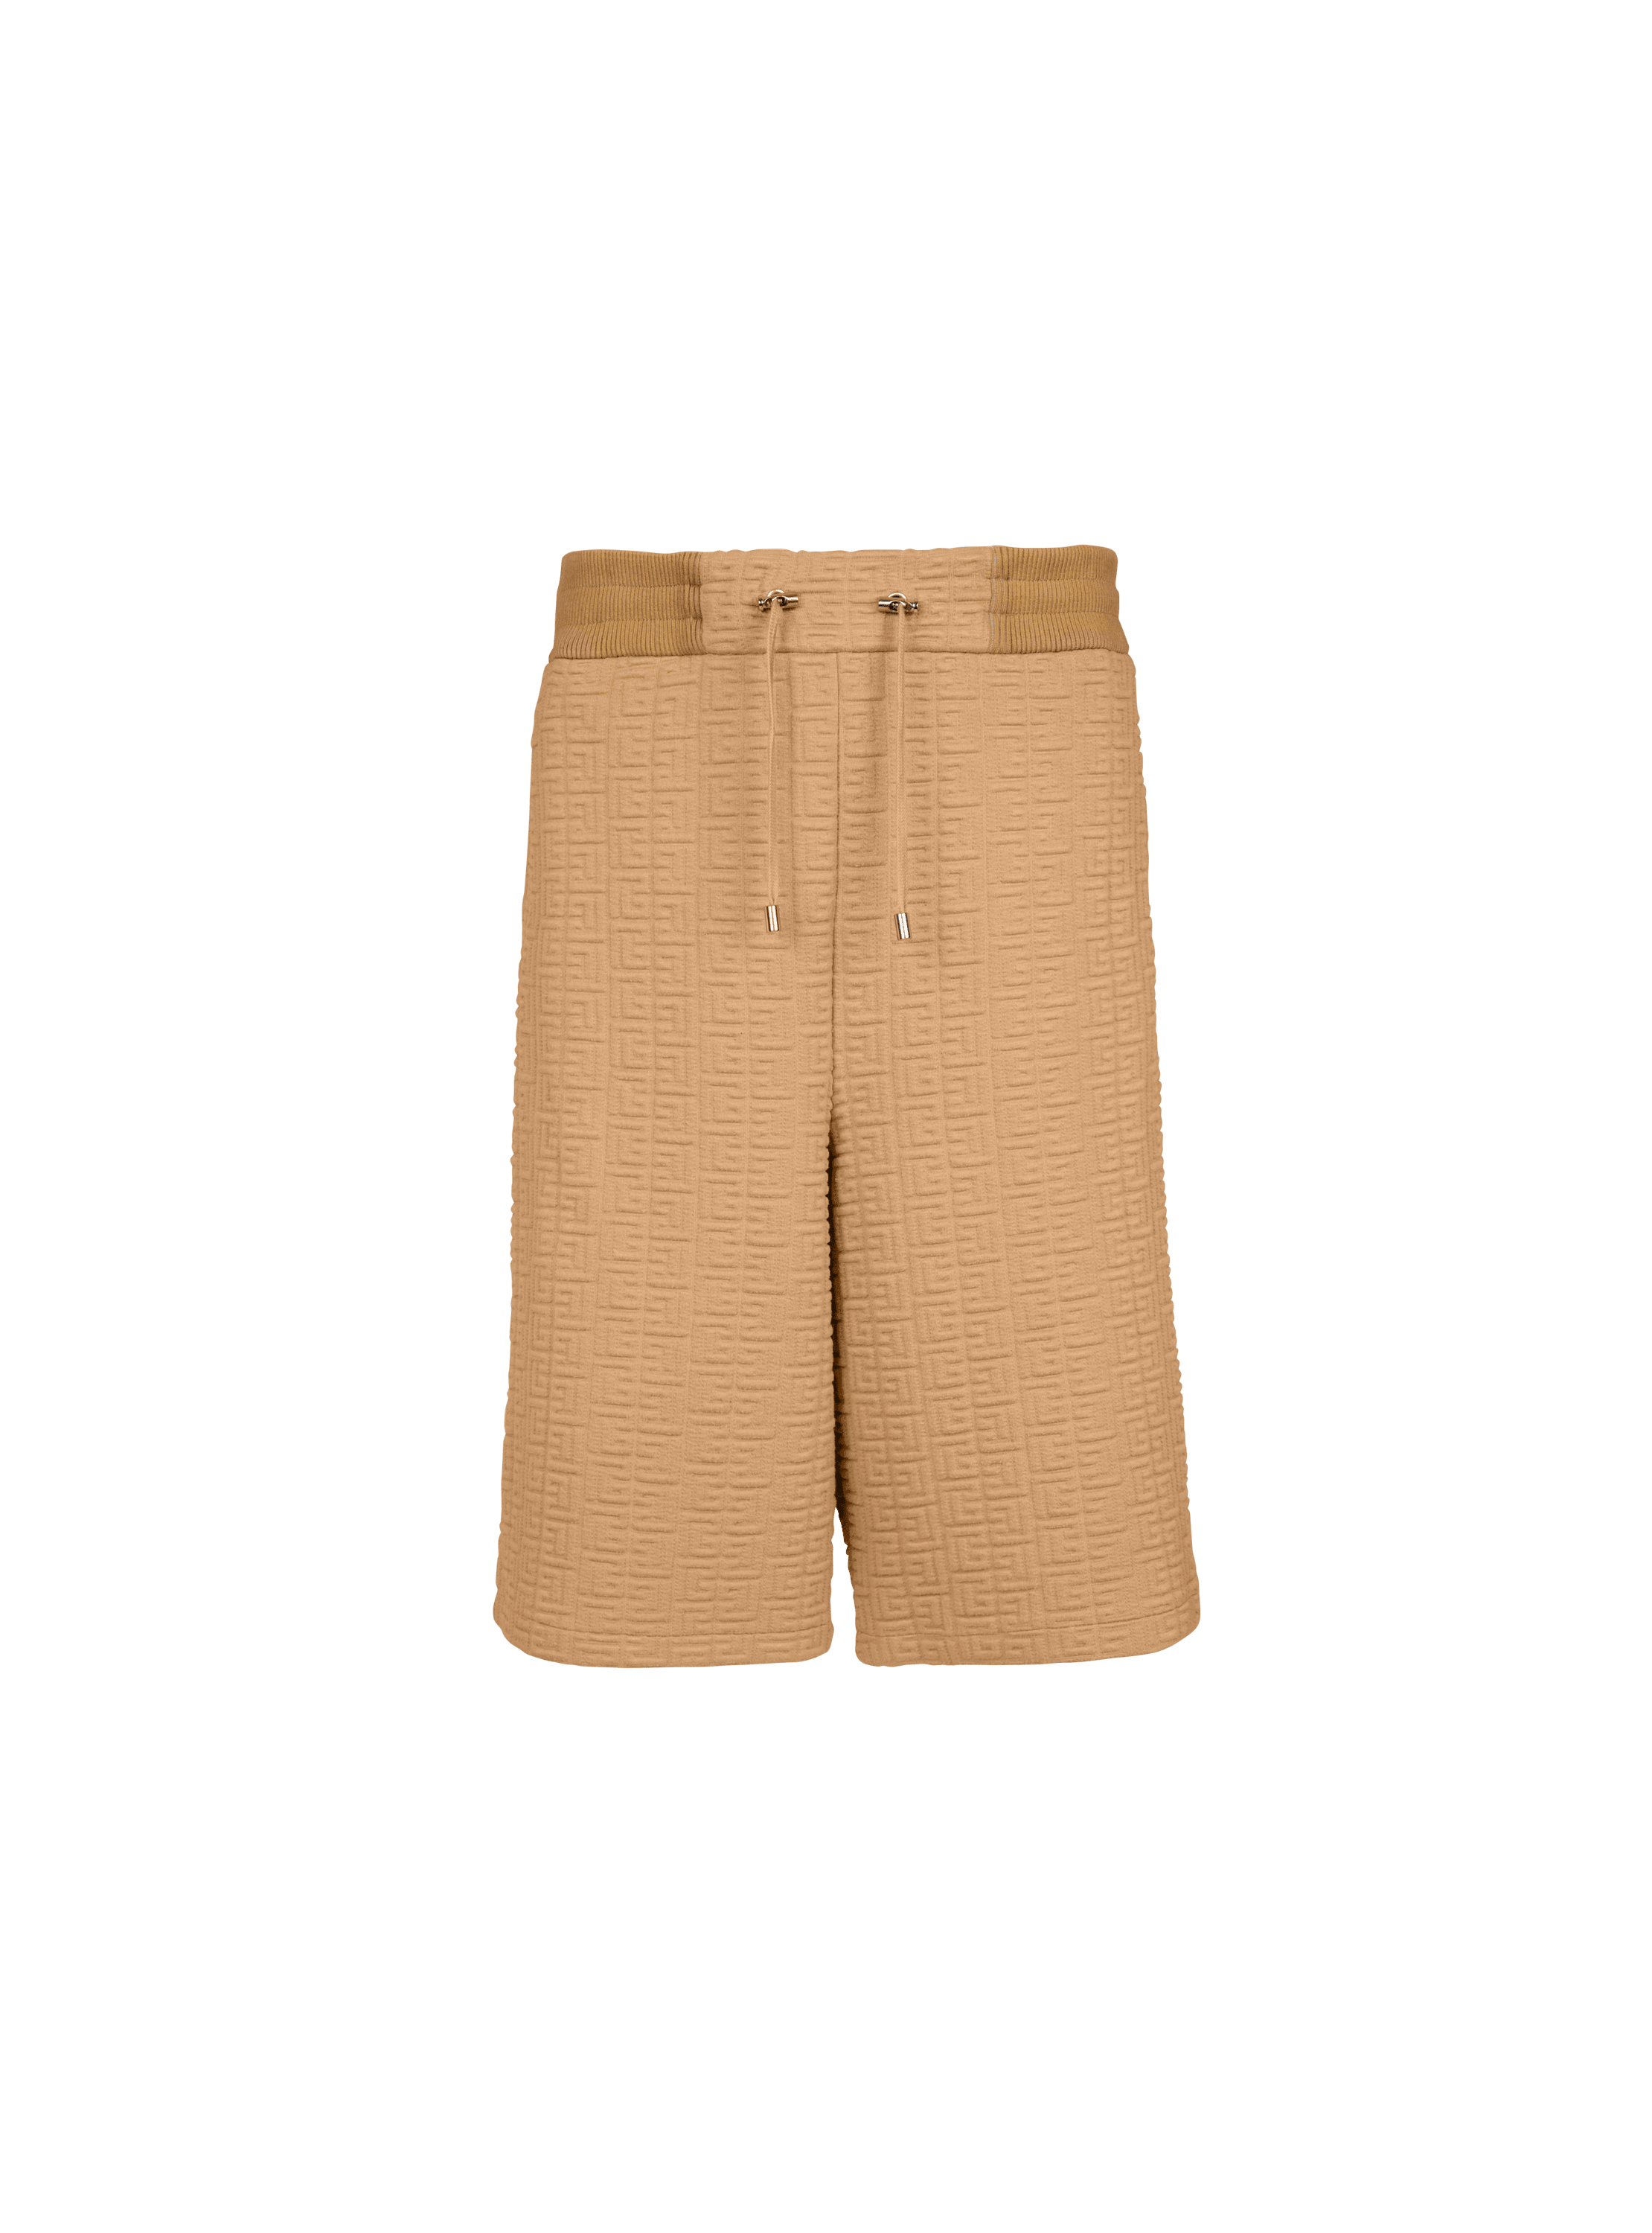 Bermuda shorts with embossed Balmain monogram, brown, hi-res